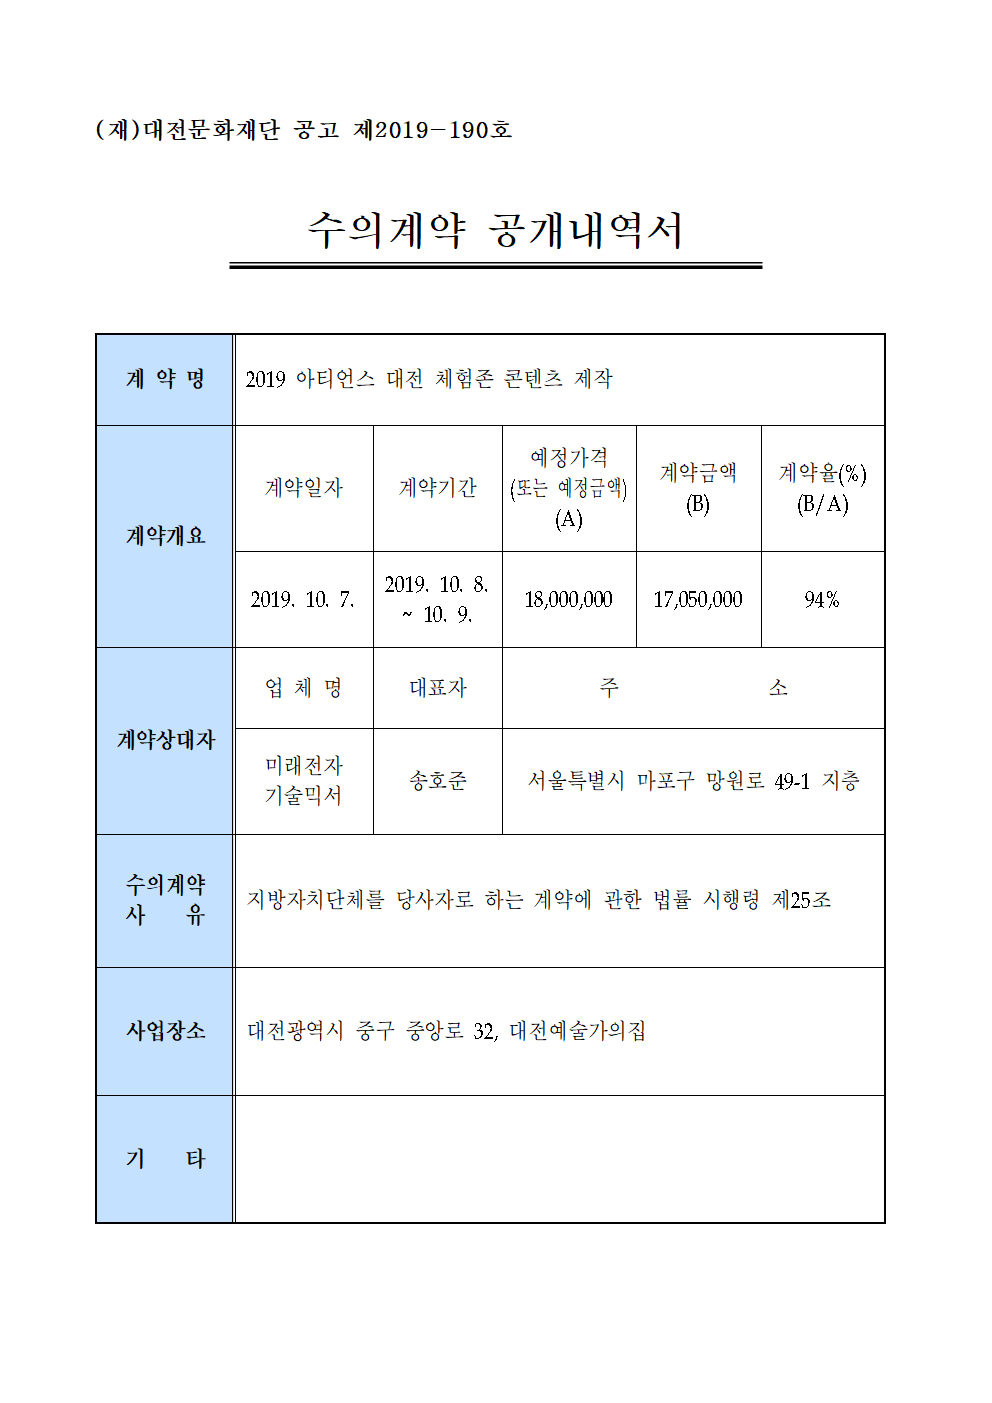 2019 아티언스 대전 체험존 콘텐츠 제작 용역 수의계약 내역 공개